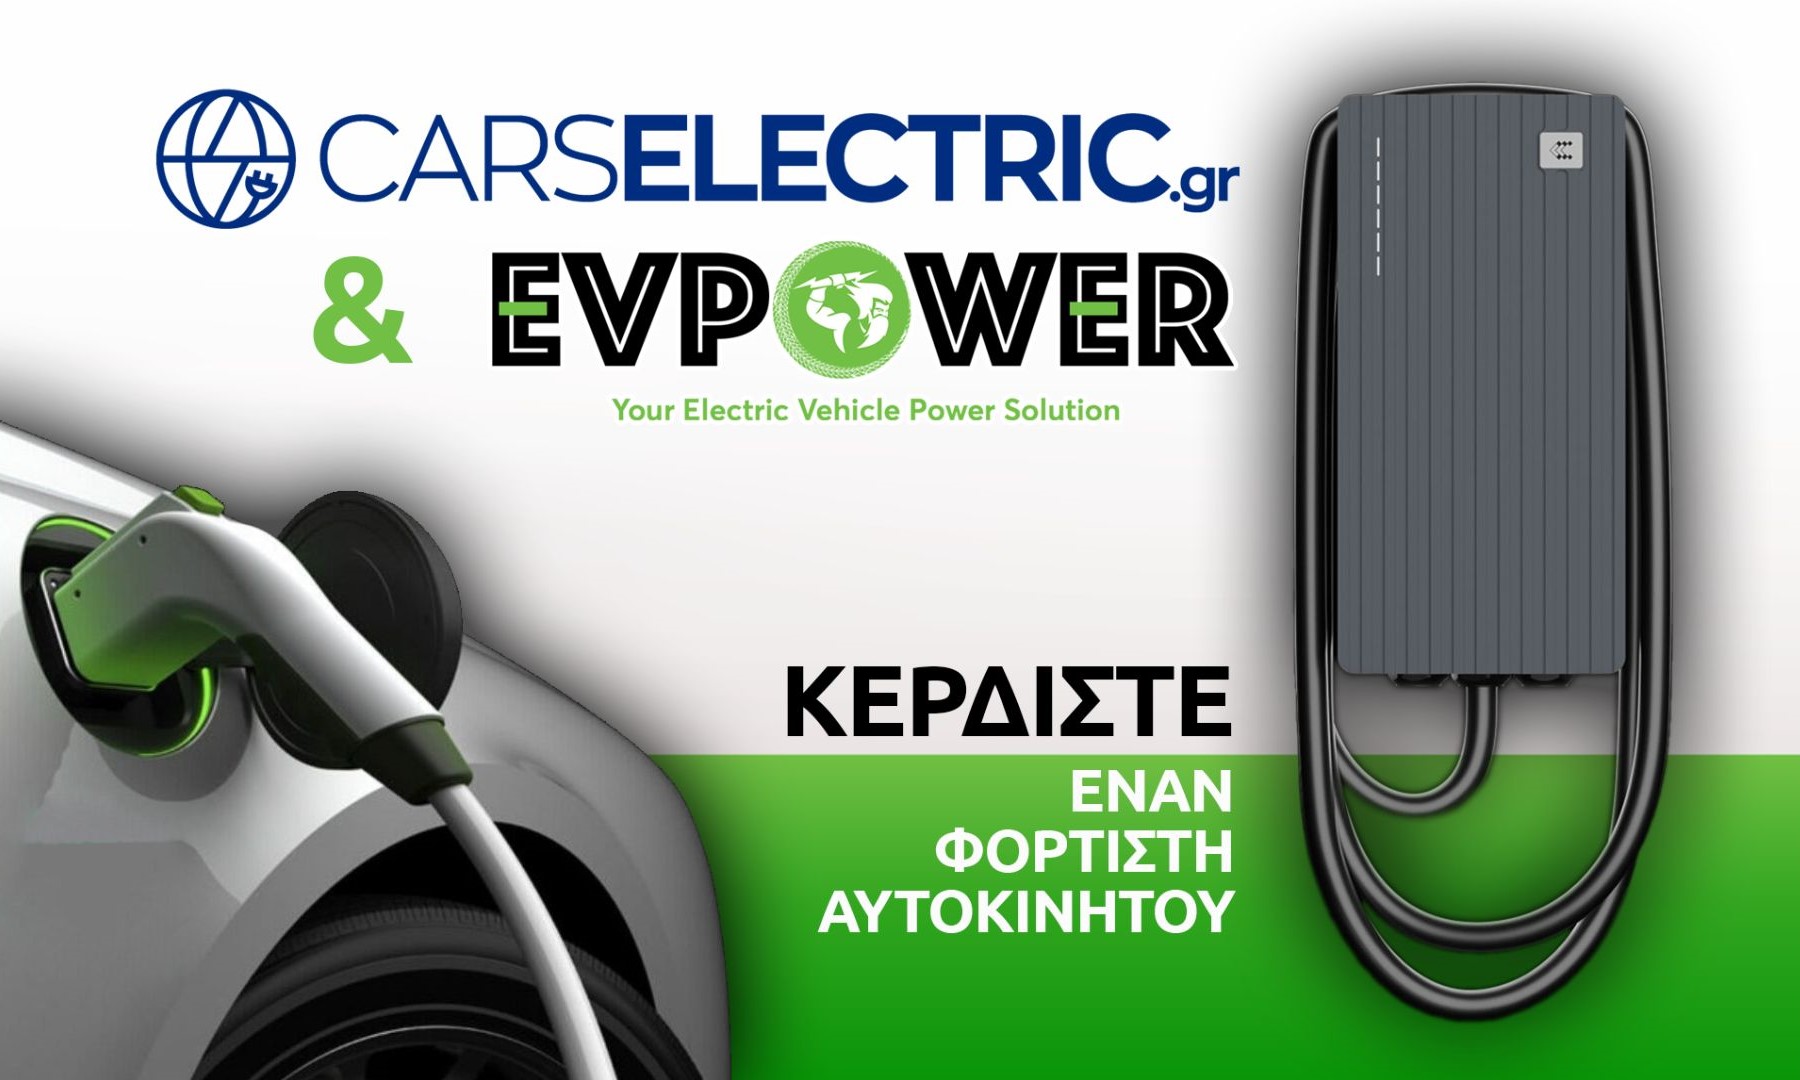 Μεγάλος Διαγωνισμός CarsElectric.gr – EVPOWER: Κέρδισε έναν φορτιστή ηλεκτρικού οχήματος!